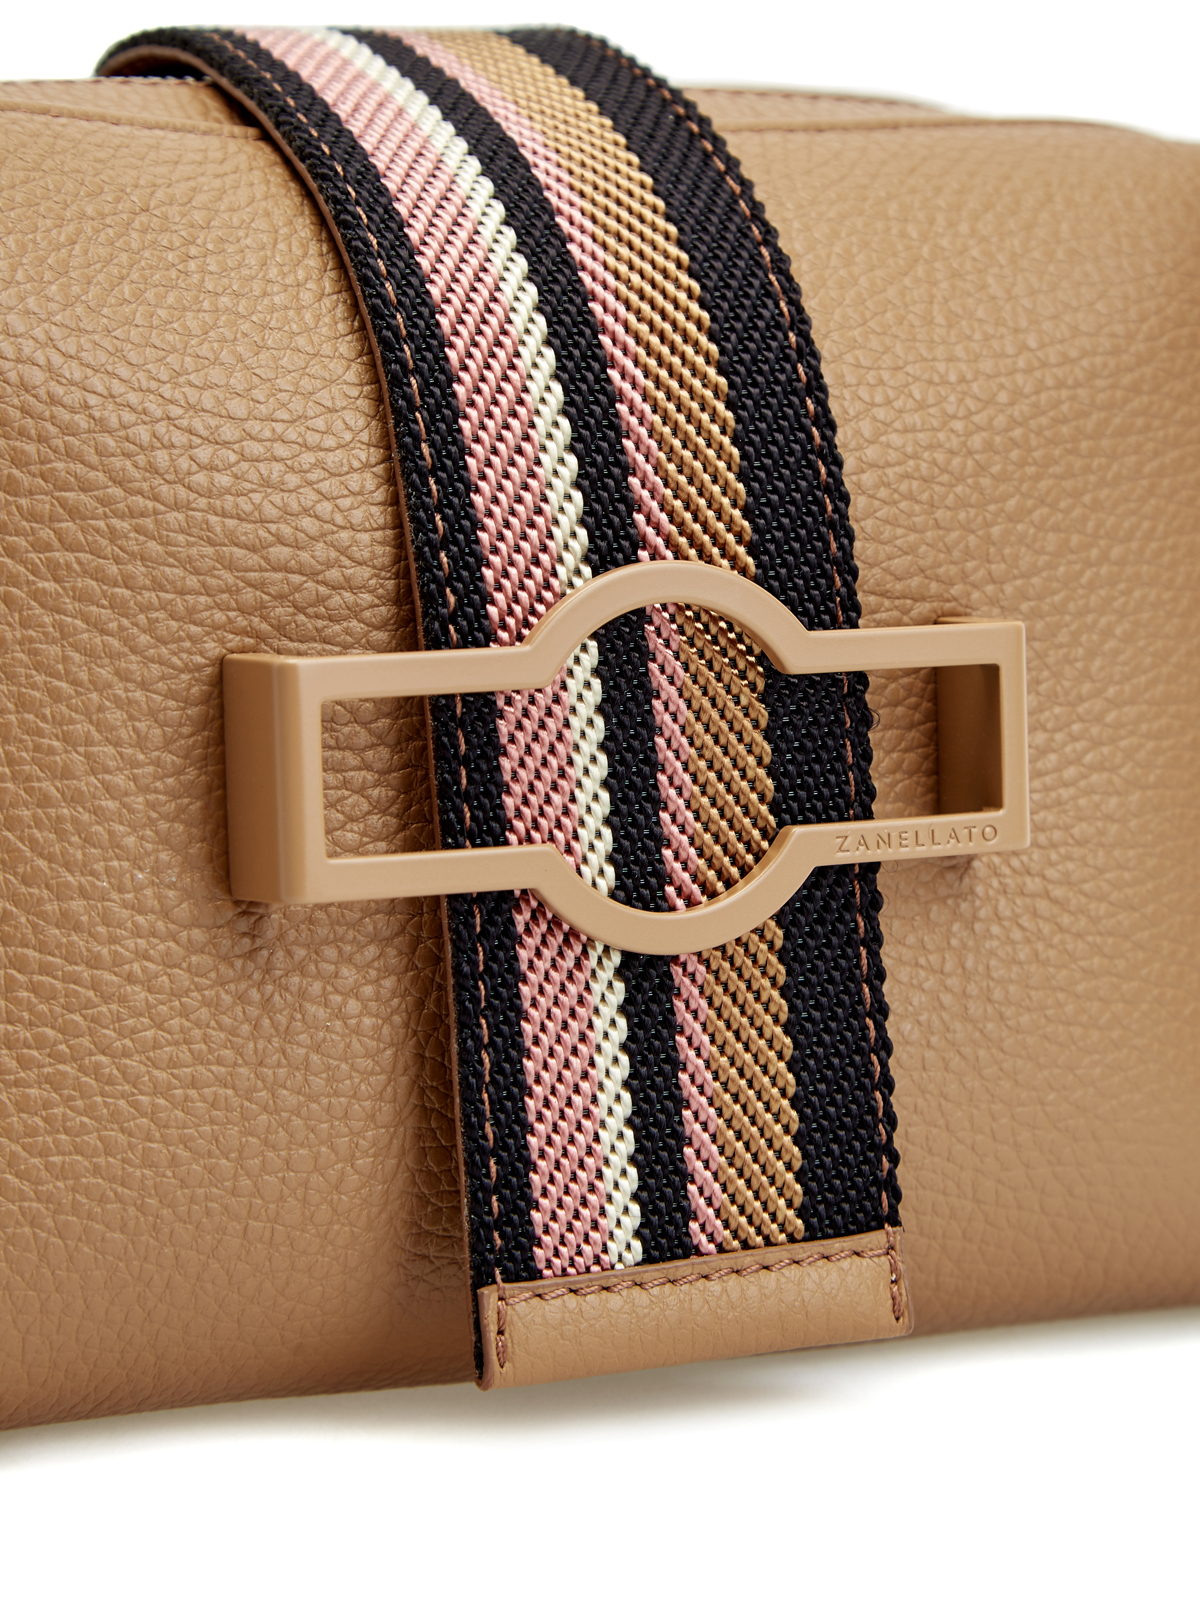 Кожаная сумка Oda с регулируемым ремнем и заклепками ZANELLATO, цвет коричневый, размер 38;44 - фото 6